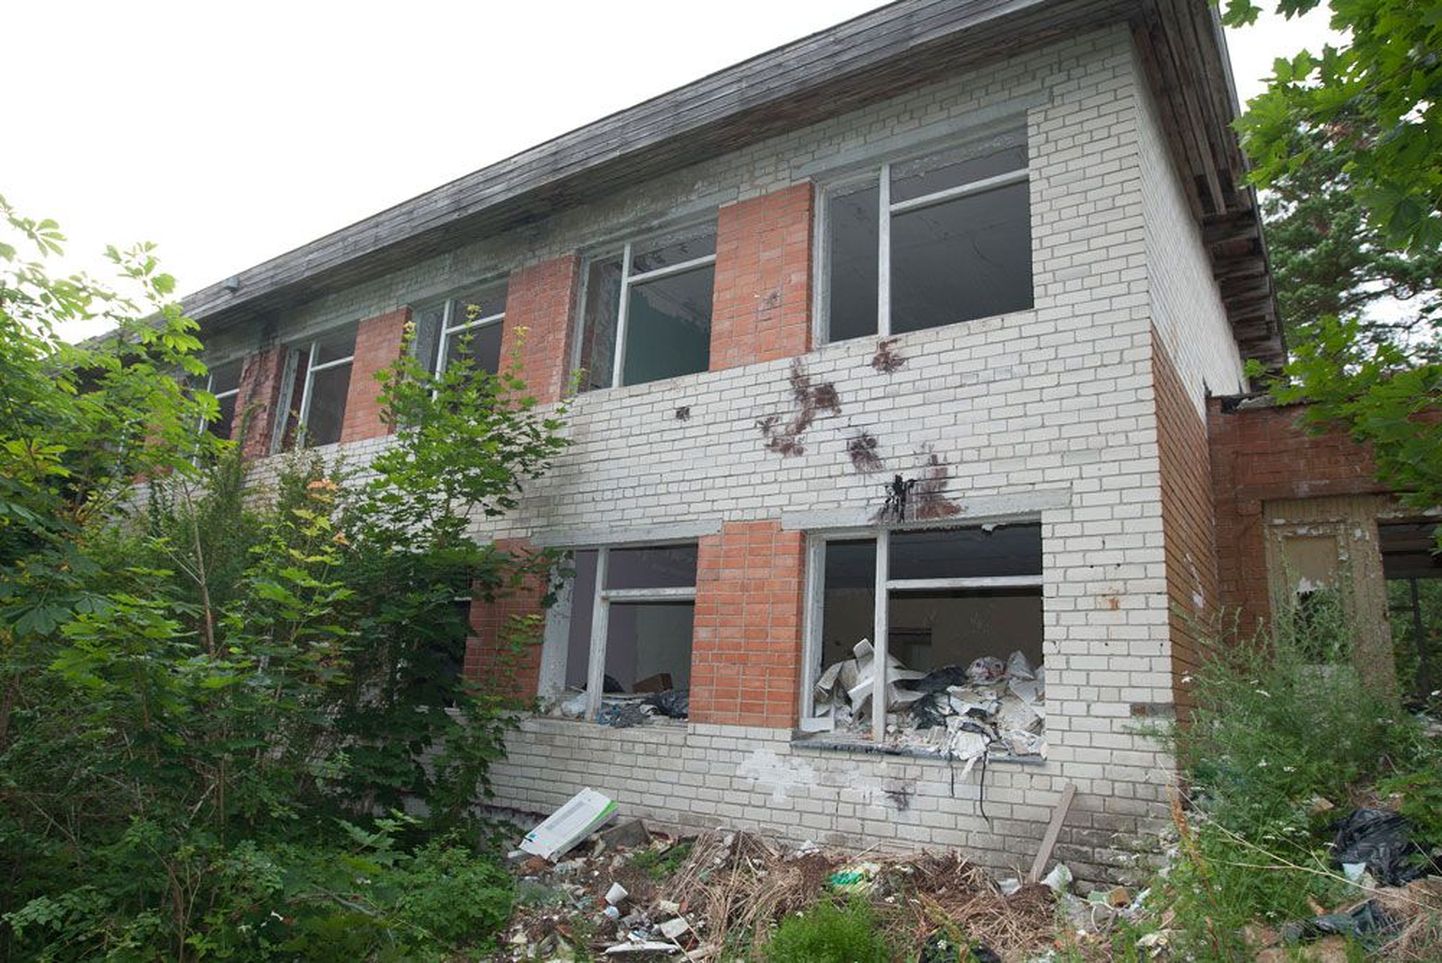 Бывшая школа — одно из многих заброшенных зданий Суурпеа, постепенно превращающихся в настоящую свалку.